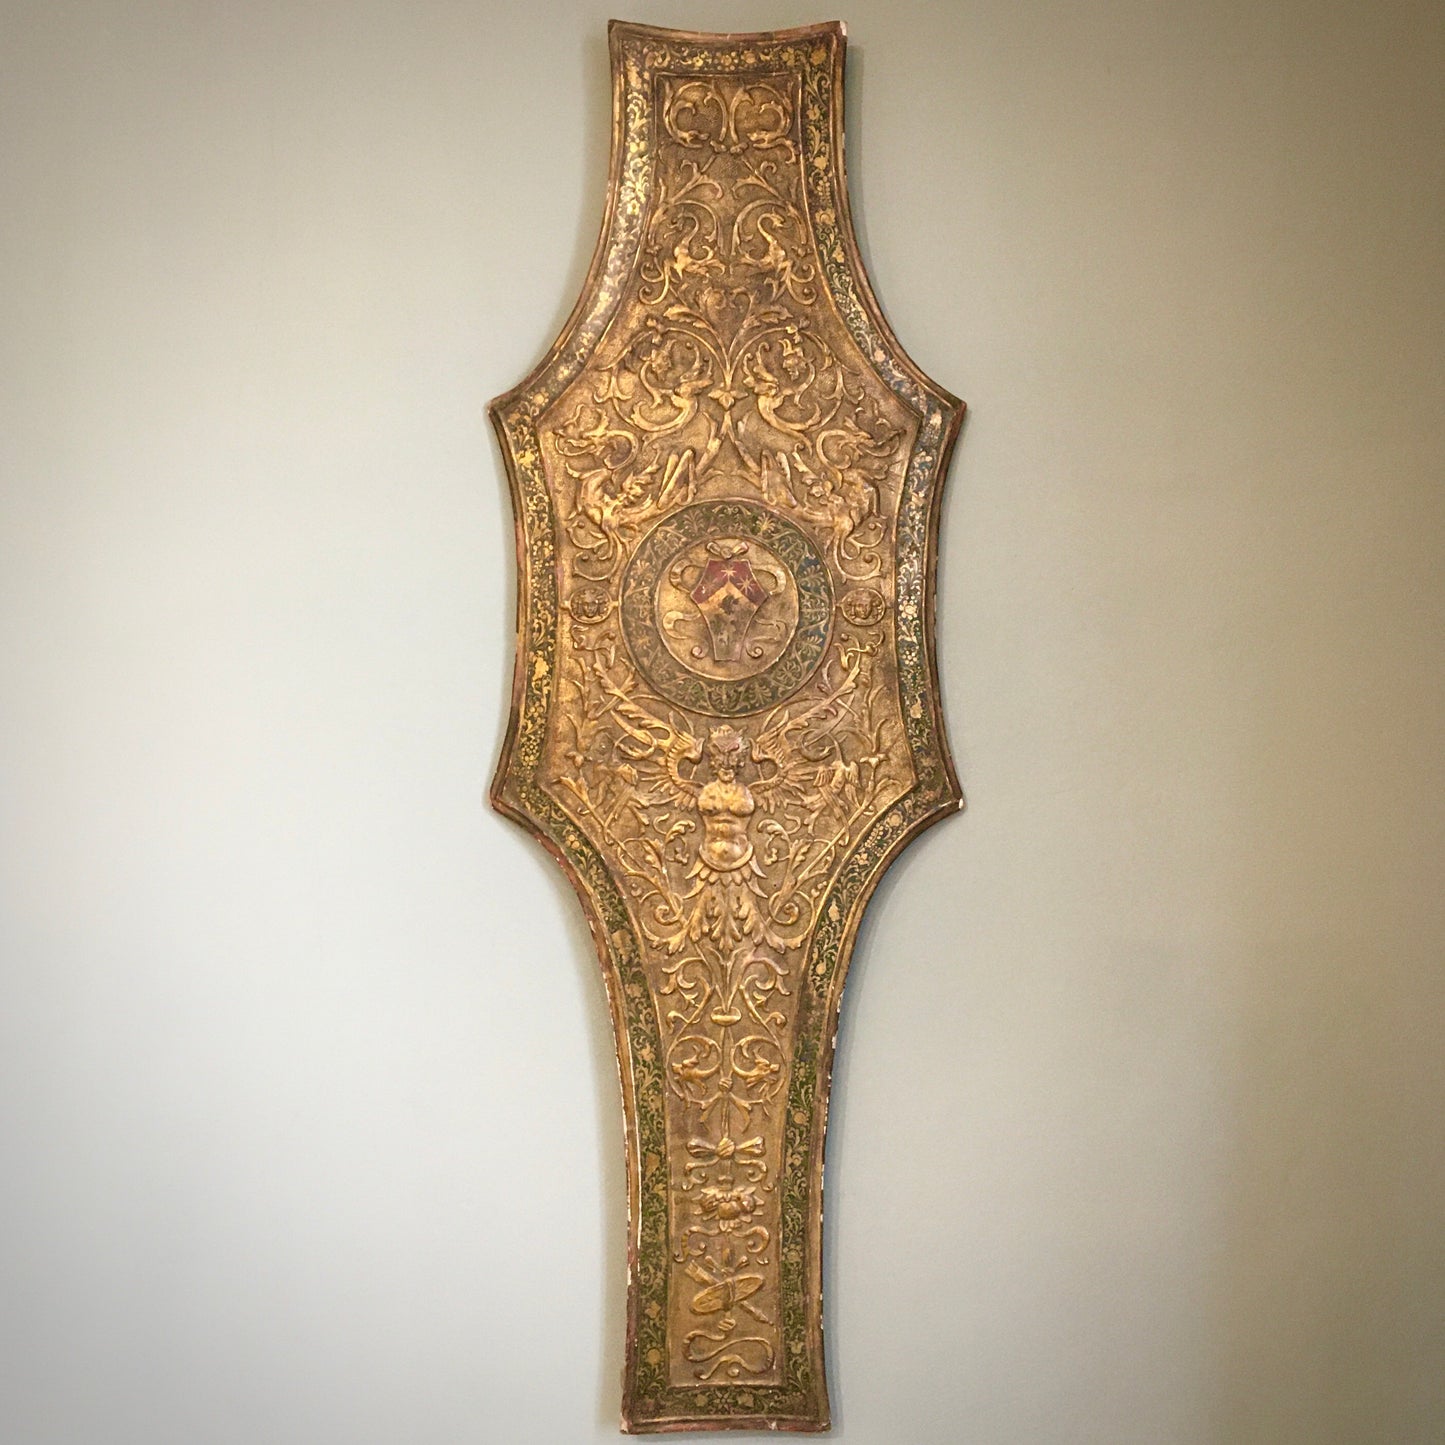 Early 19th c. Italian Renaissance Revival Pastiglia Heraldic Shield